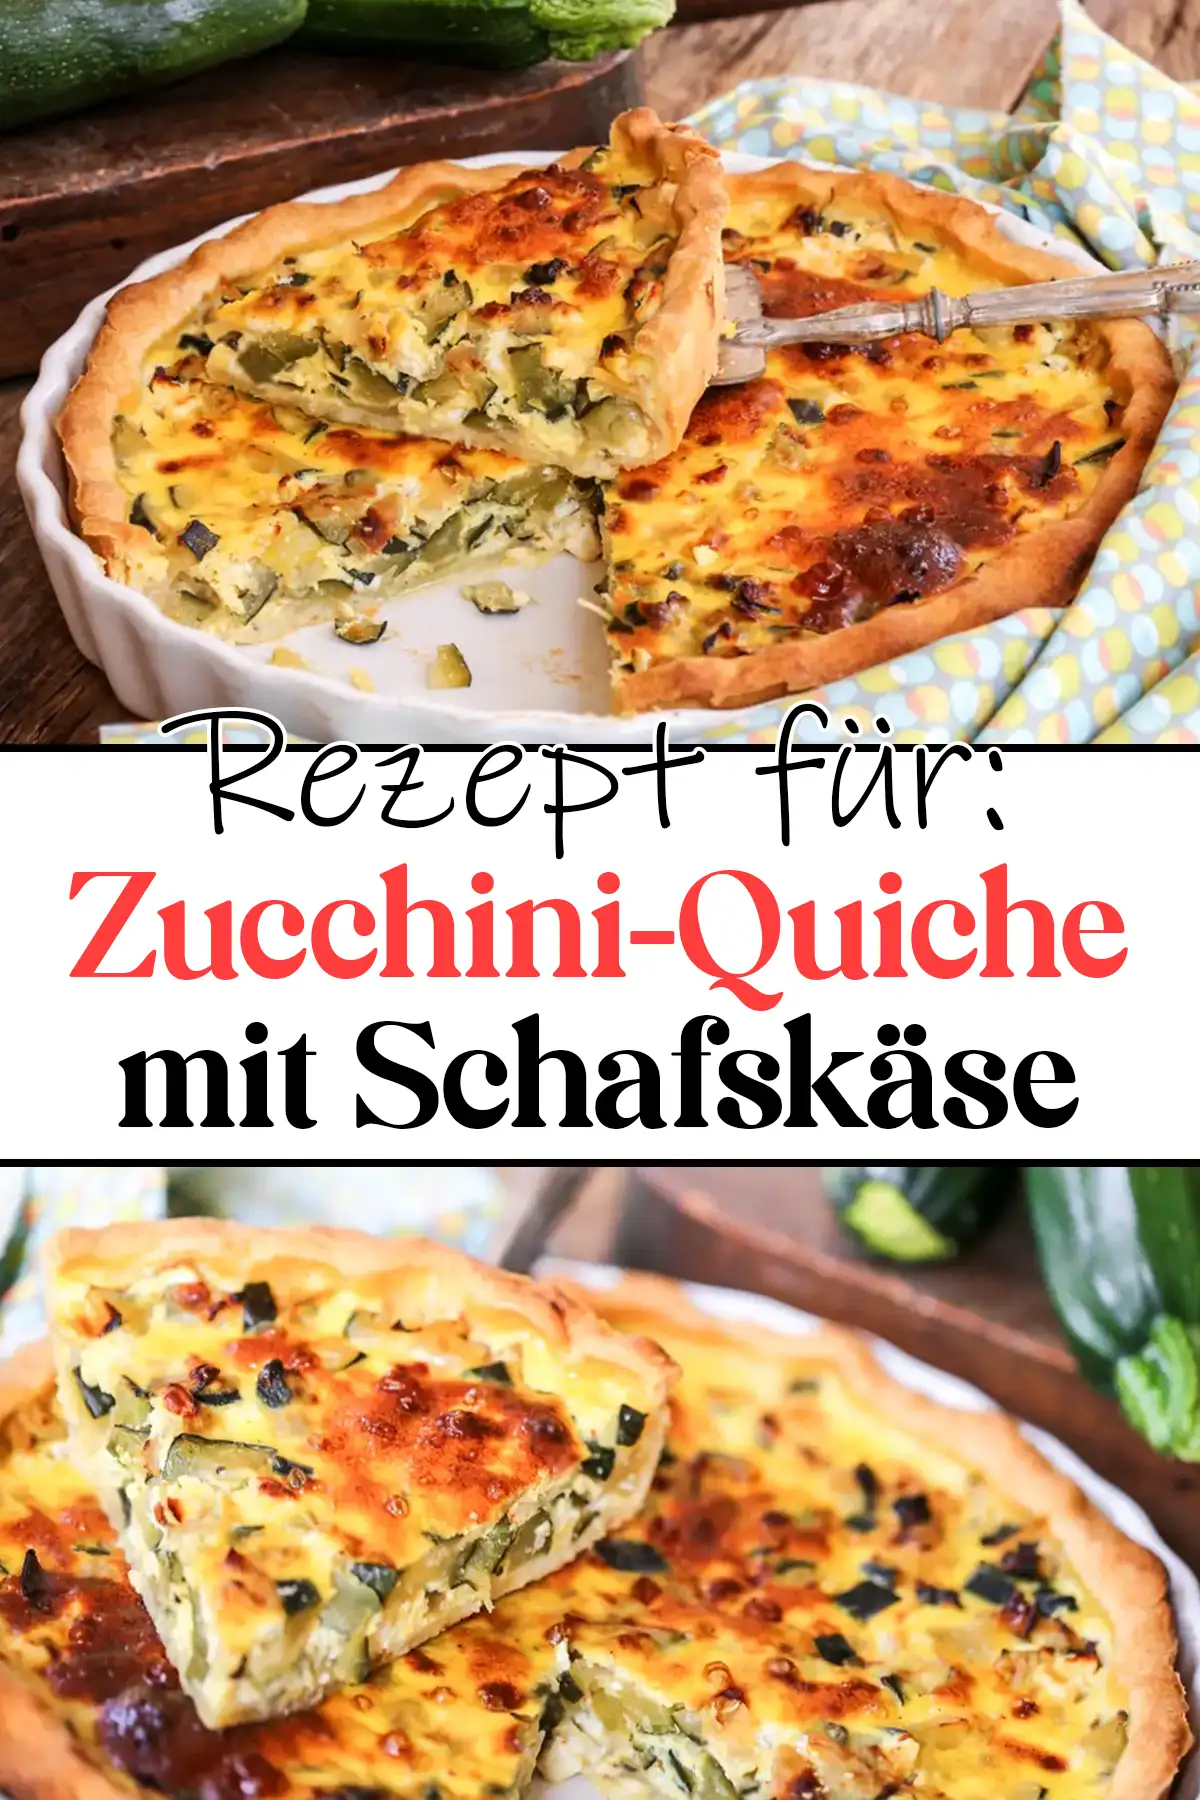 Unwiderstehliche Zucchini-Quiche mit Schafskäse: Ein Muss!